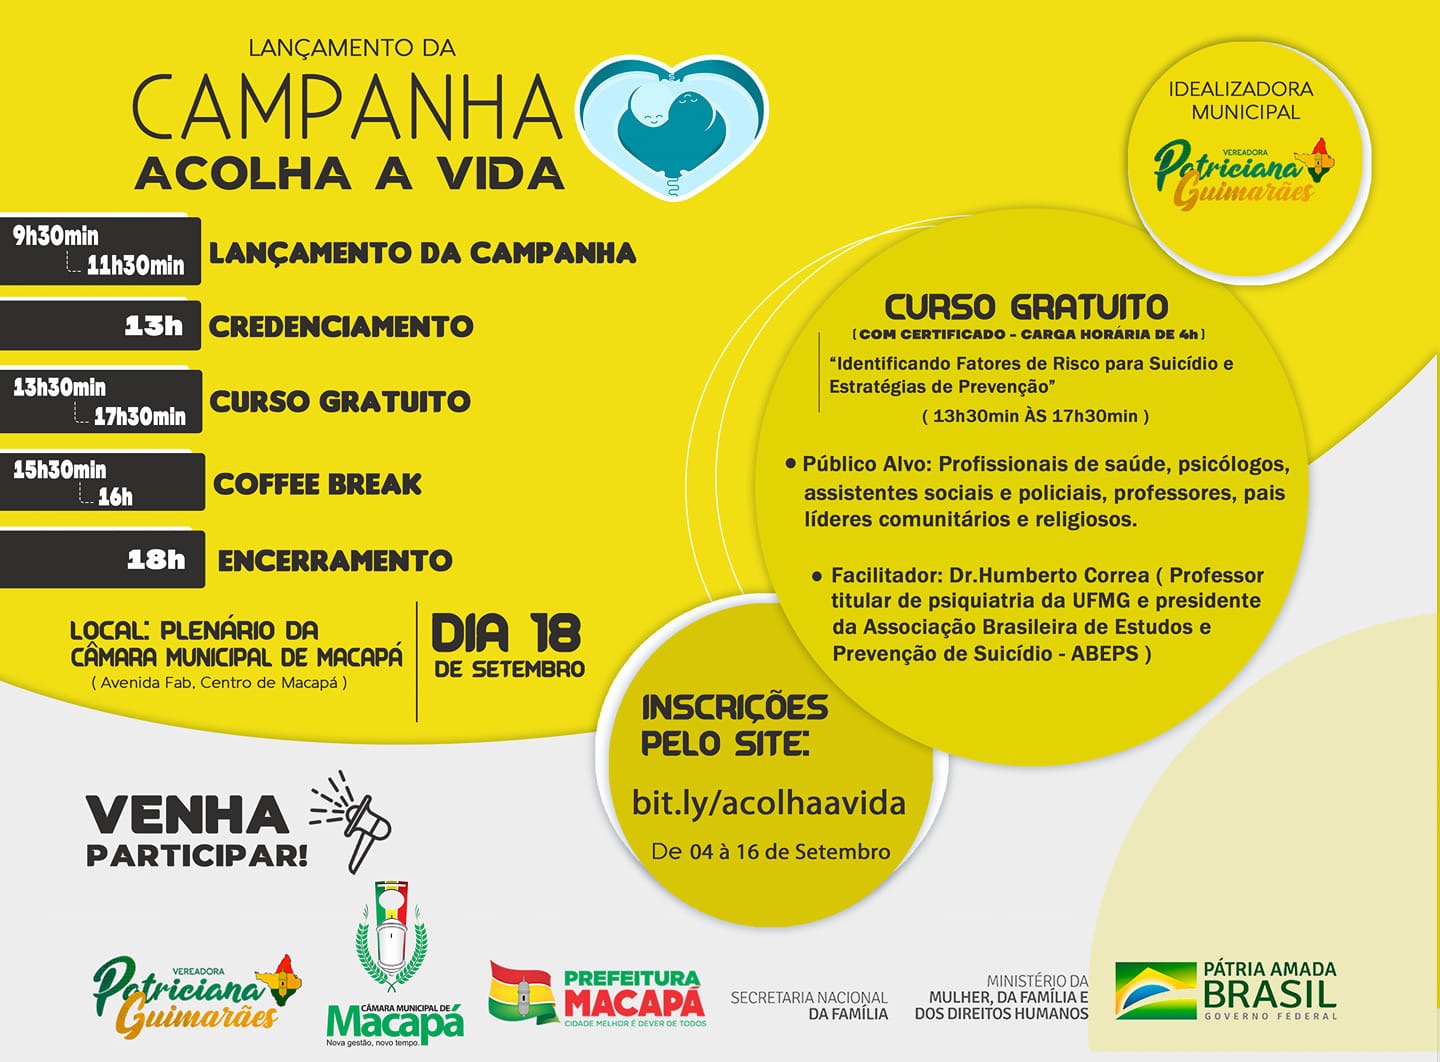 Campanha acolha a vida é realizada pela Vereadora Patriciana Guimarães 